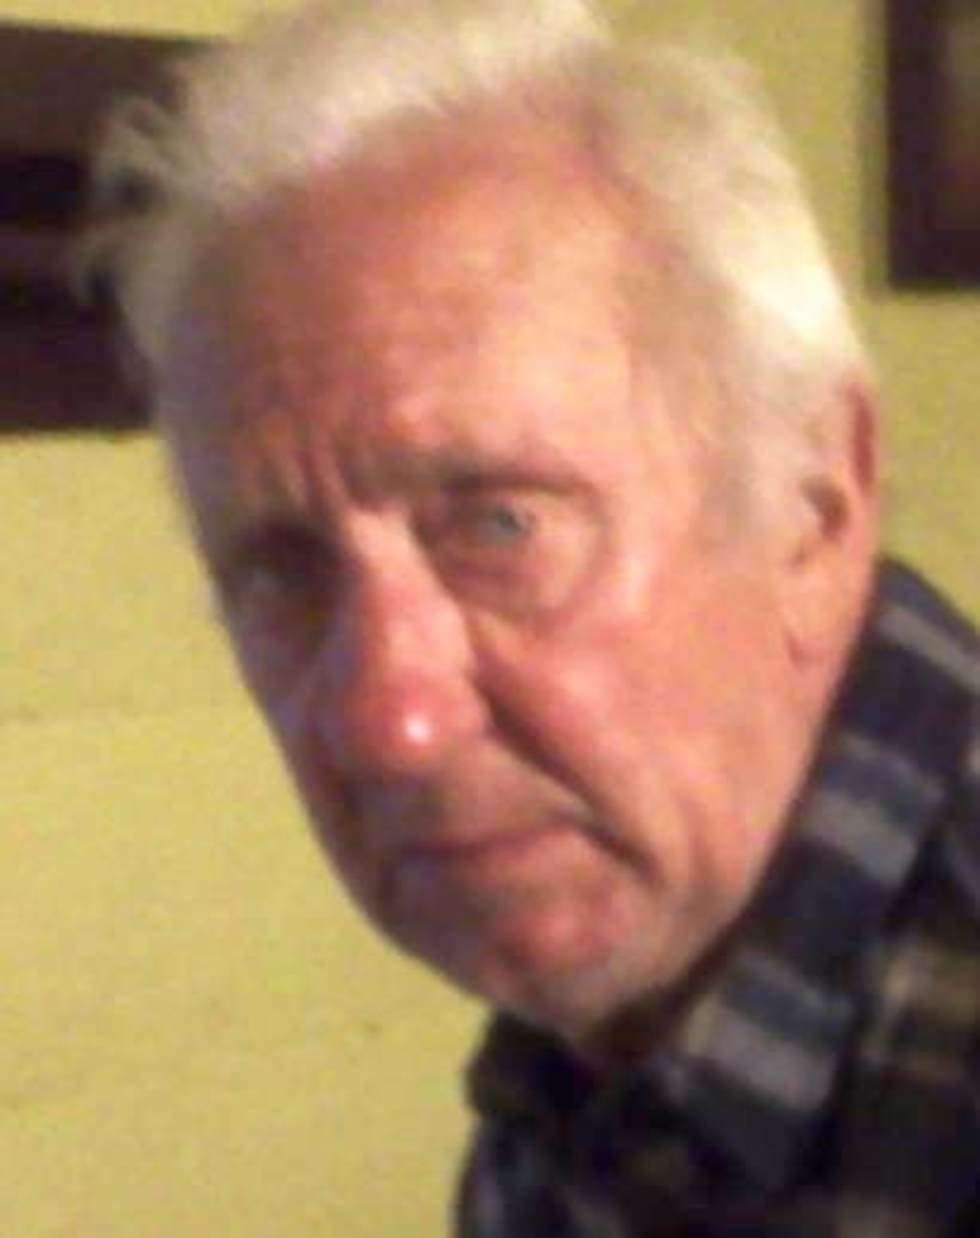  21 czerwca 2012 r w miejscowości Osowa (Lubelskie) zaginął Jan Kędzierawski. 

Ma 69 lat, 176 wzrostu i niebieskie oczy. W dniu zaginięcia ubrany był w beżowy sweter, jasnobrązową koszulę w dużą kratę, zielone dresy oraz brązowe półbuty.
